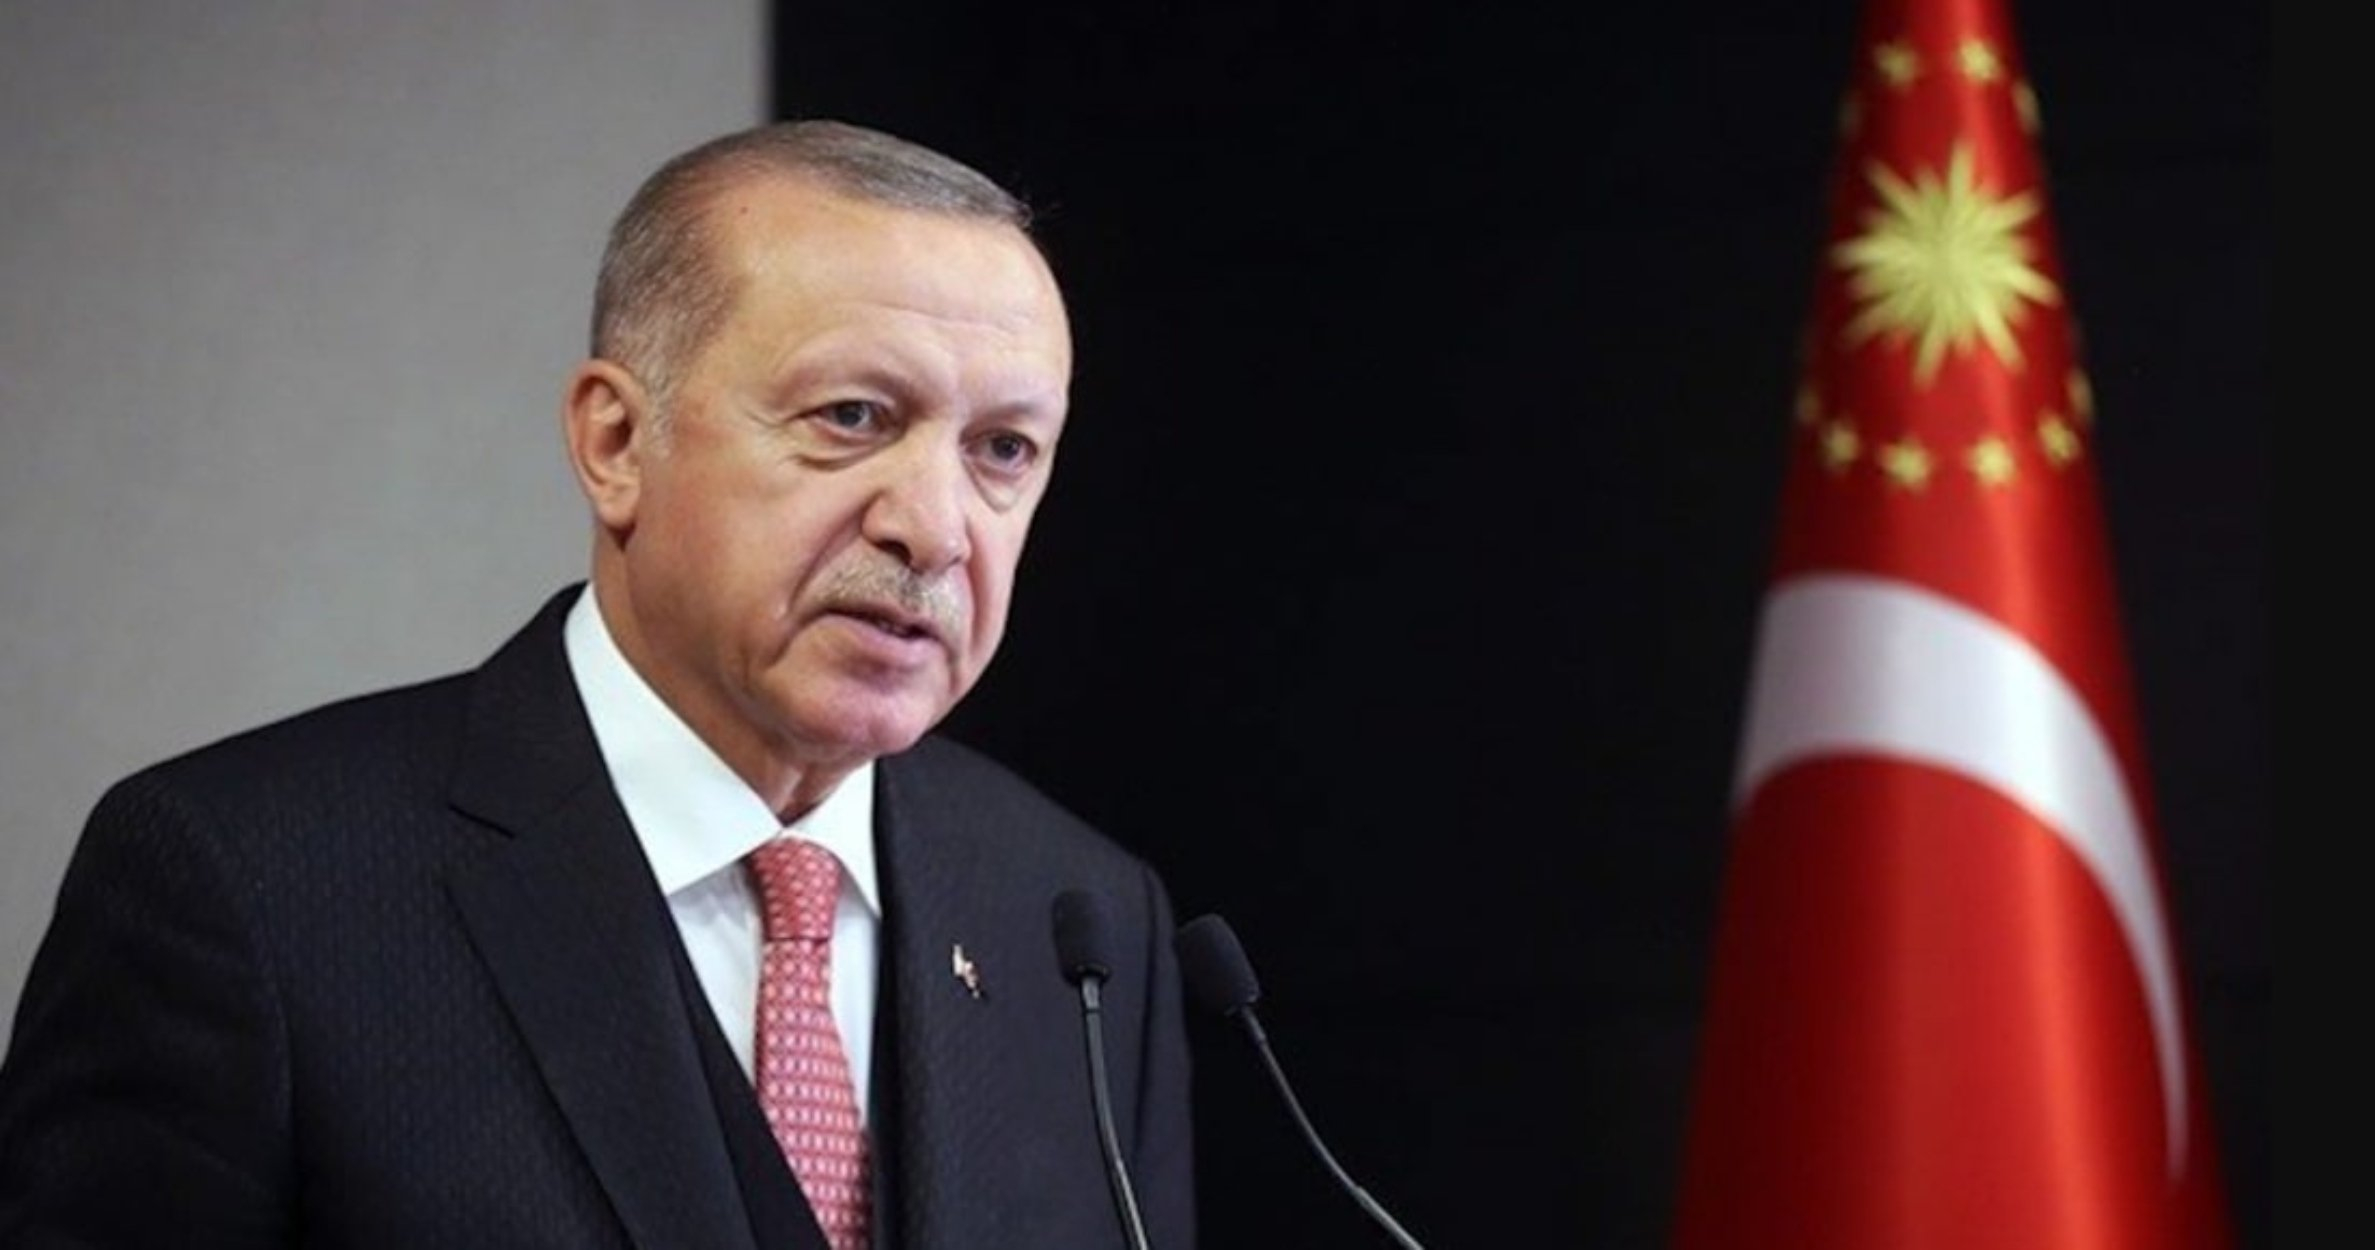 Эрдоган: Если обсуждать историю, то и мы вправе спросить о 10 миллионах погибших турок